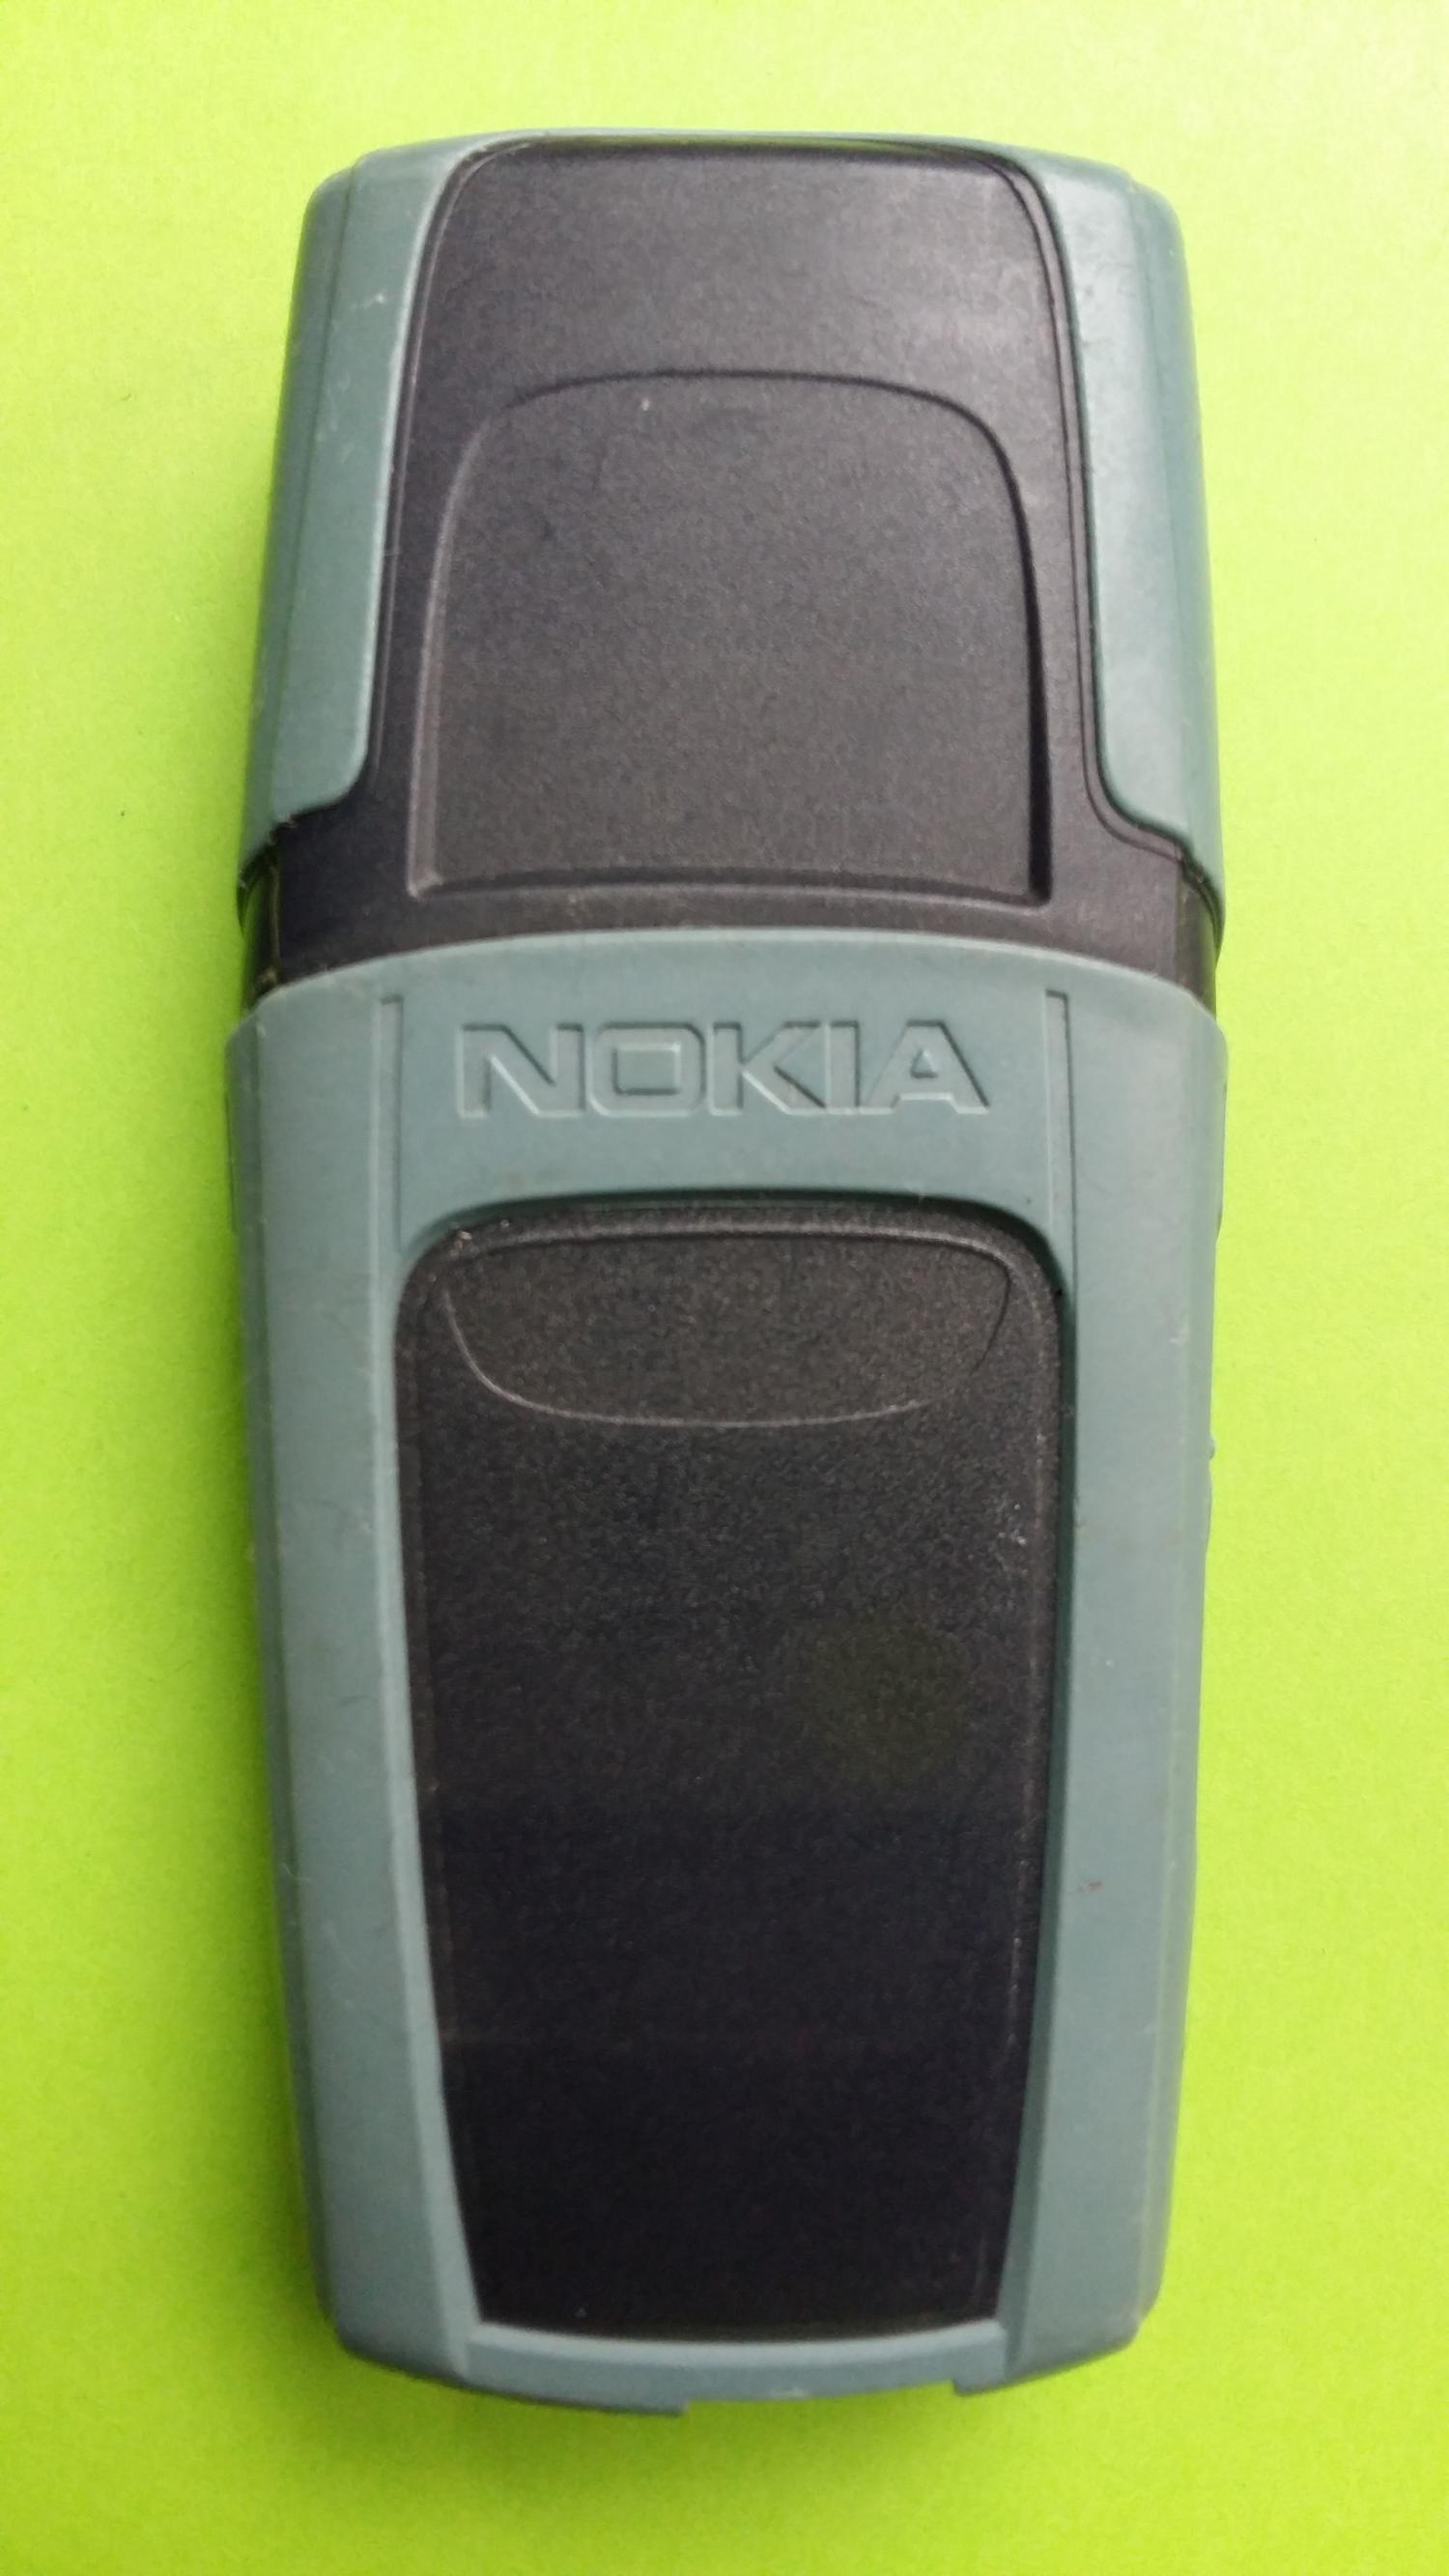 image-7307005-Nokia 5210 (4)2.jpg